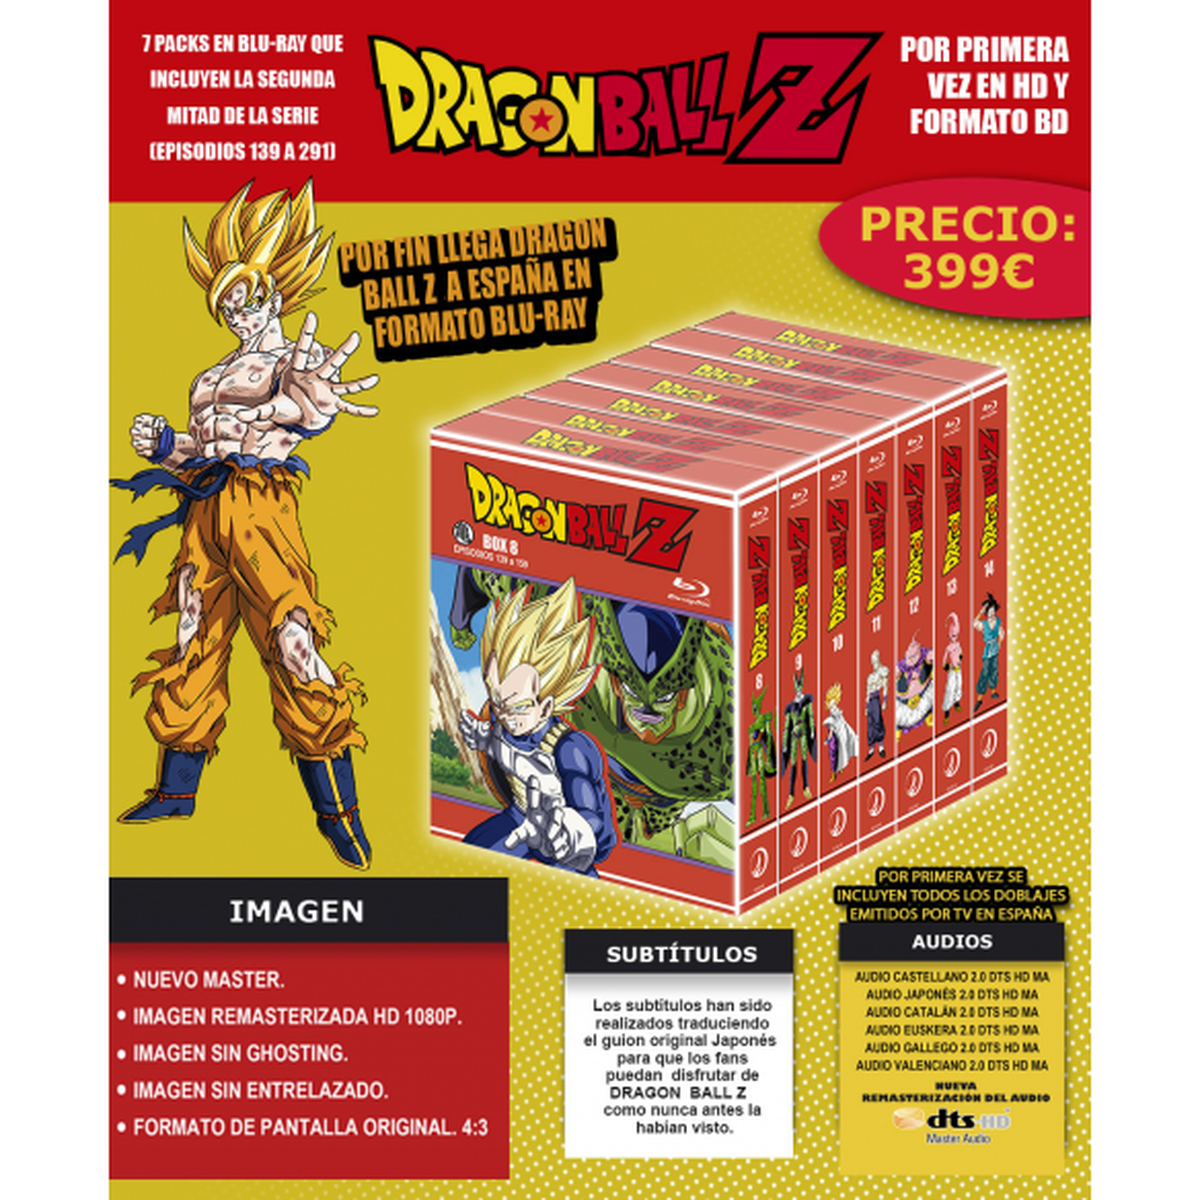 Dragon Ball Z en Blu-ray - Todos los detalles de la suscripción definitiva de la serie de Selecta Visión. ¡Un montón de regalos premium!